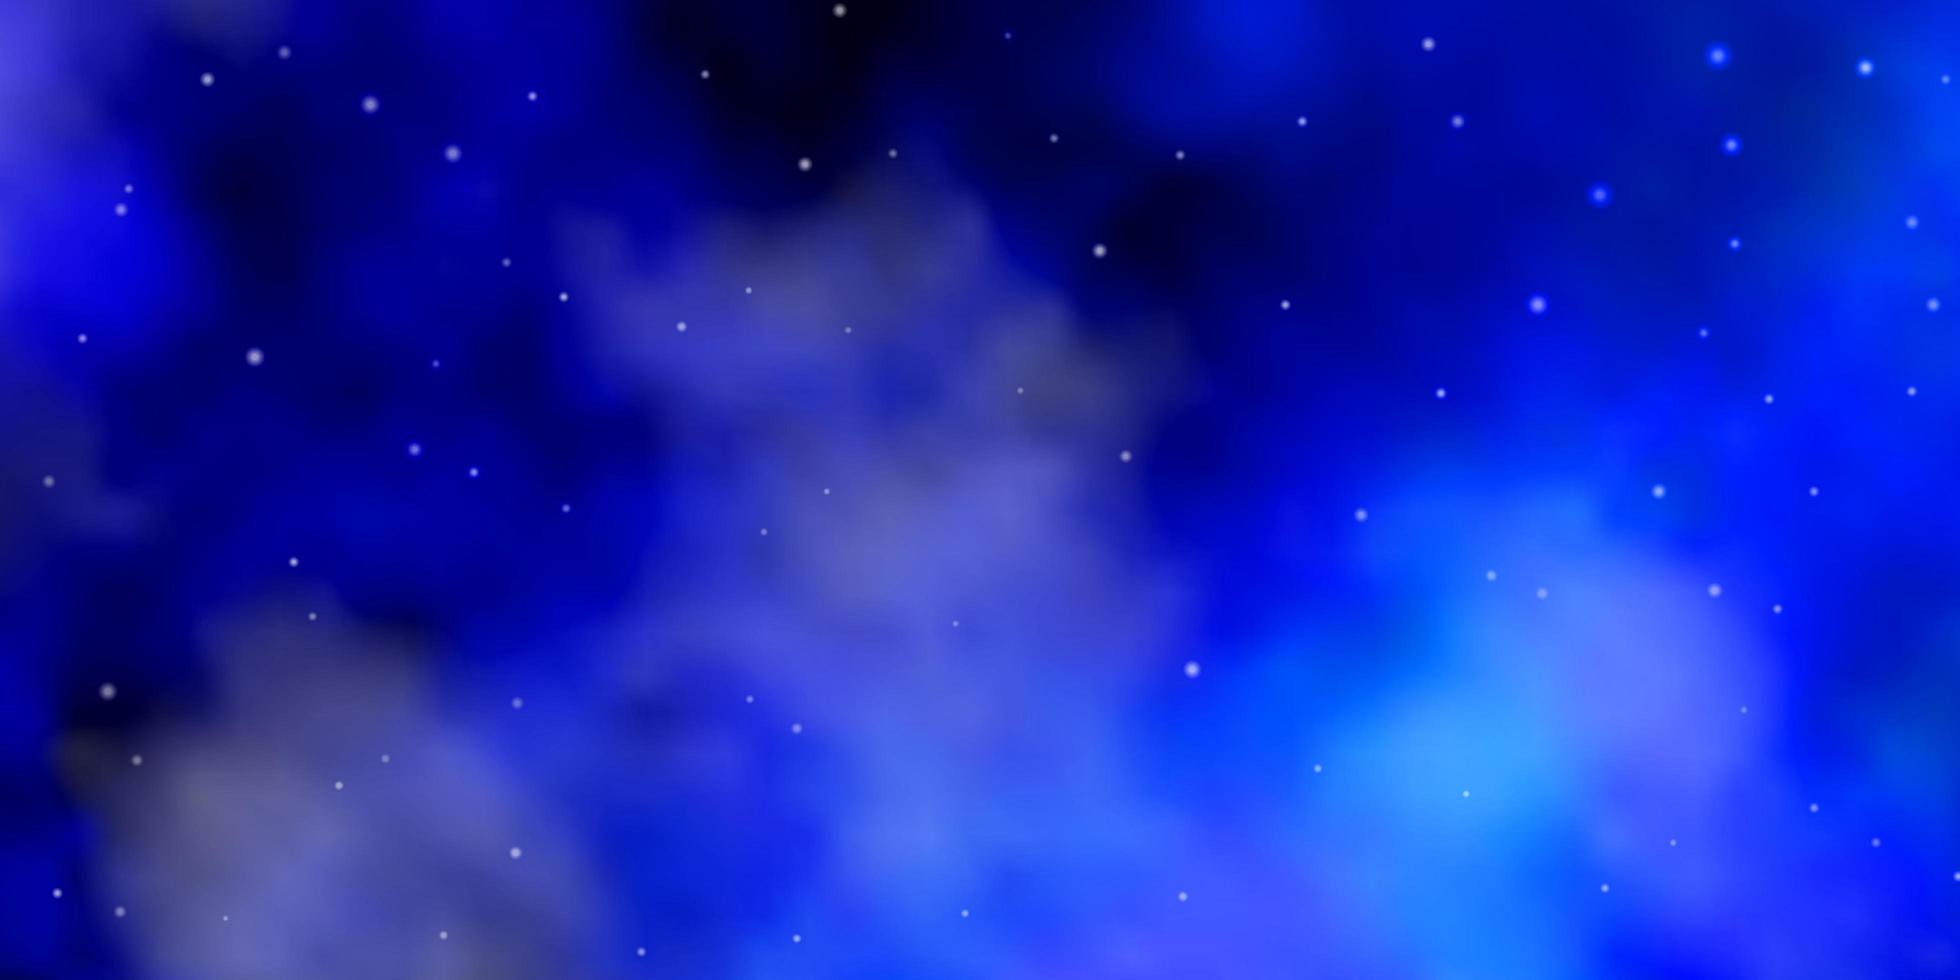 sfondo vettoriale azzurro con stelle colorate